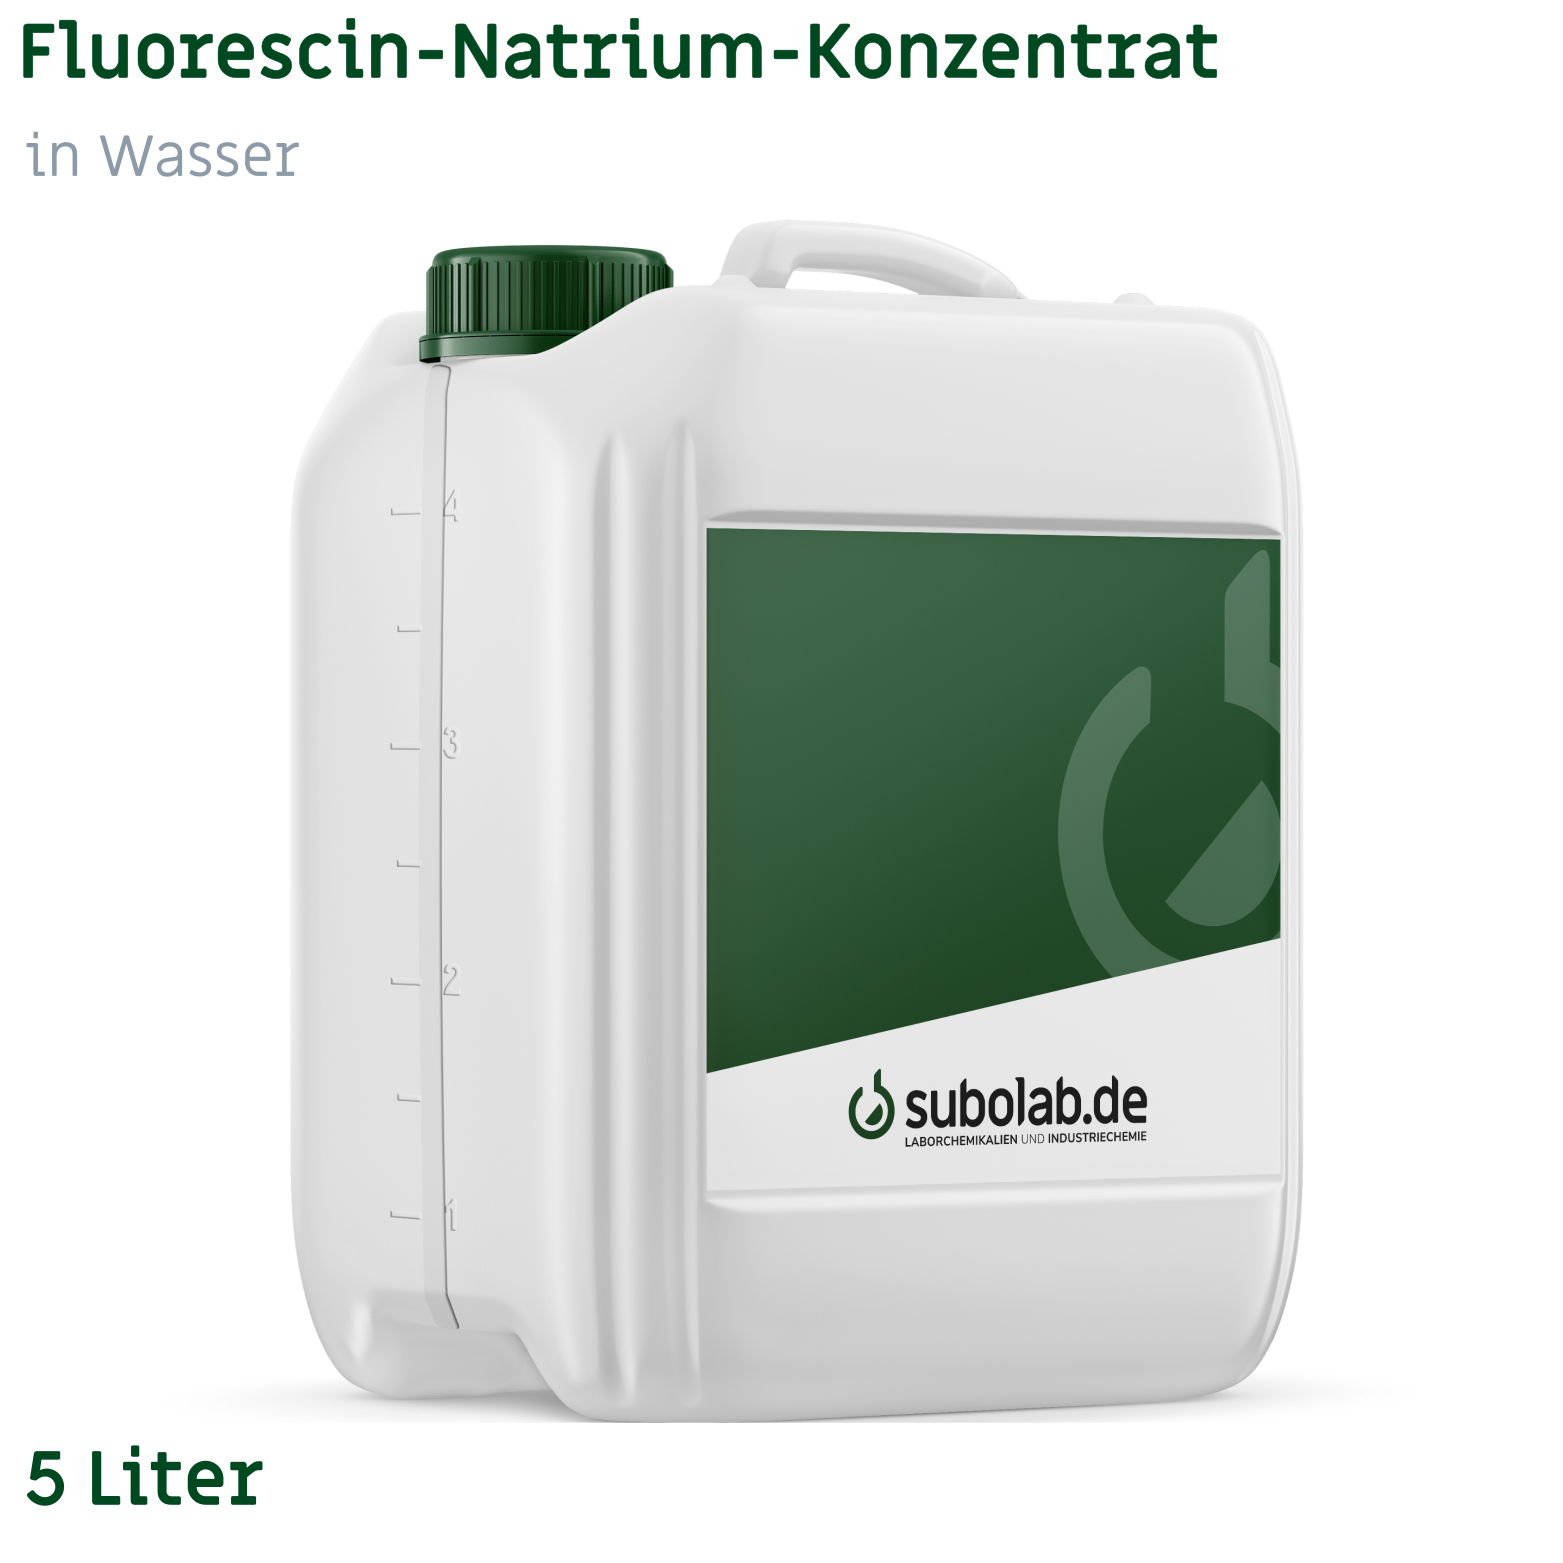 Bild von Fluorescin-Natrium-Konzentrat in Wasser (2,5 kg gelöst in Wasser) (5 Liter)